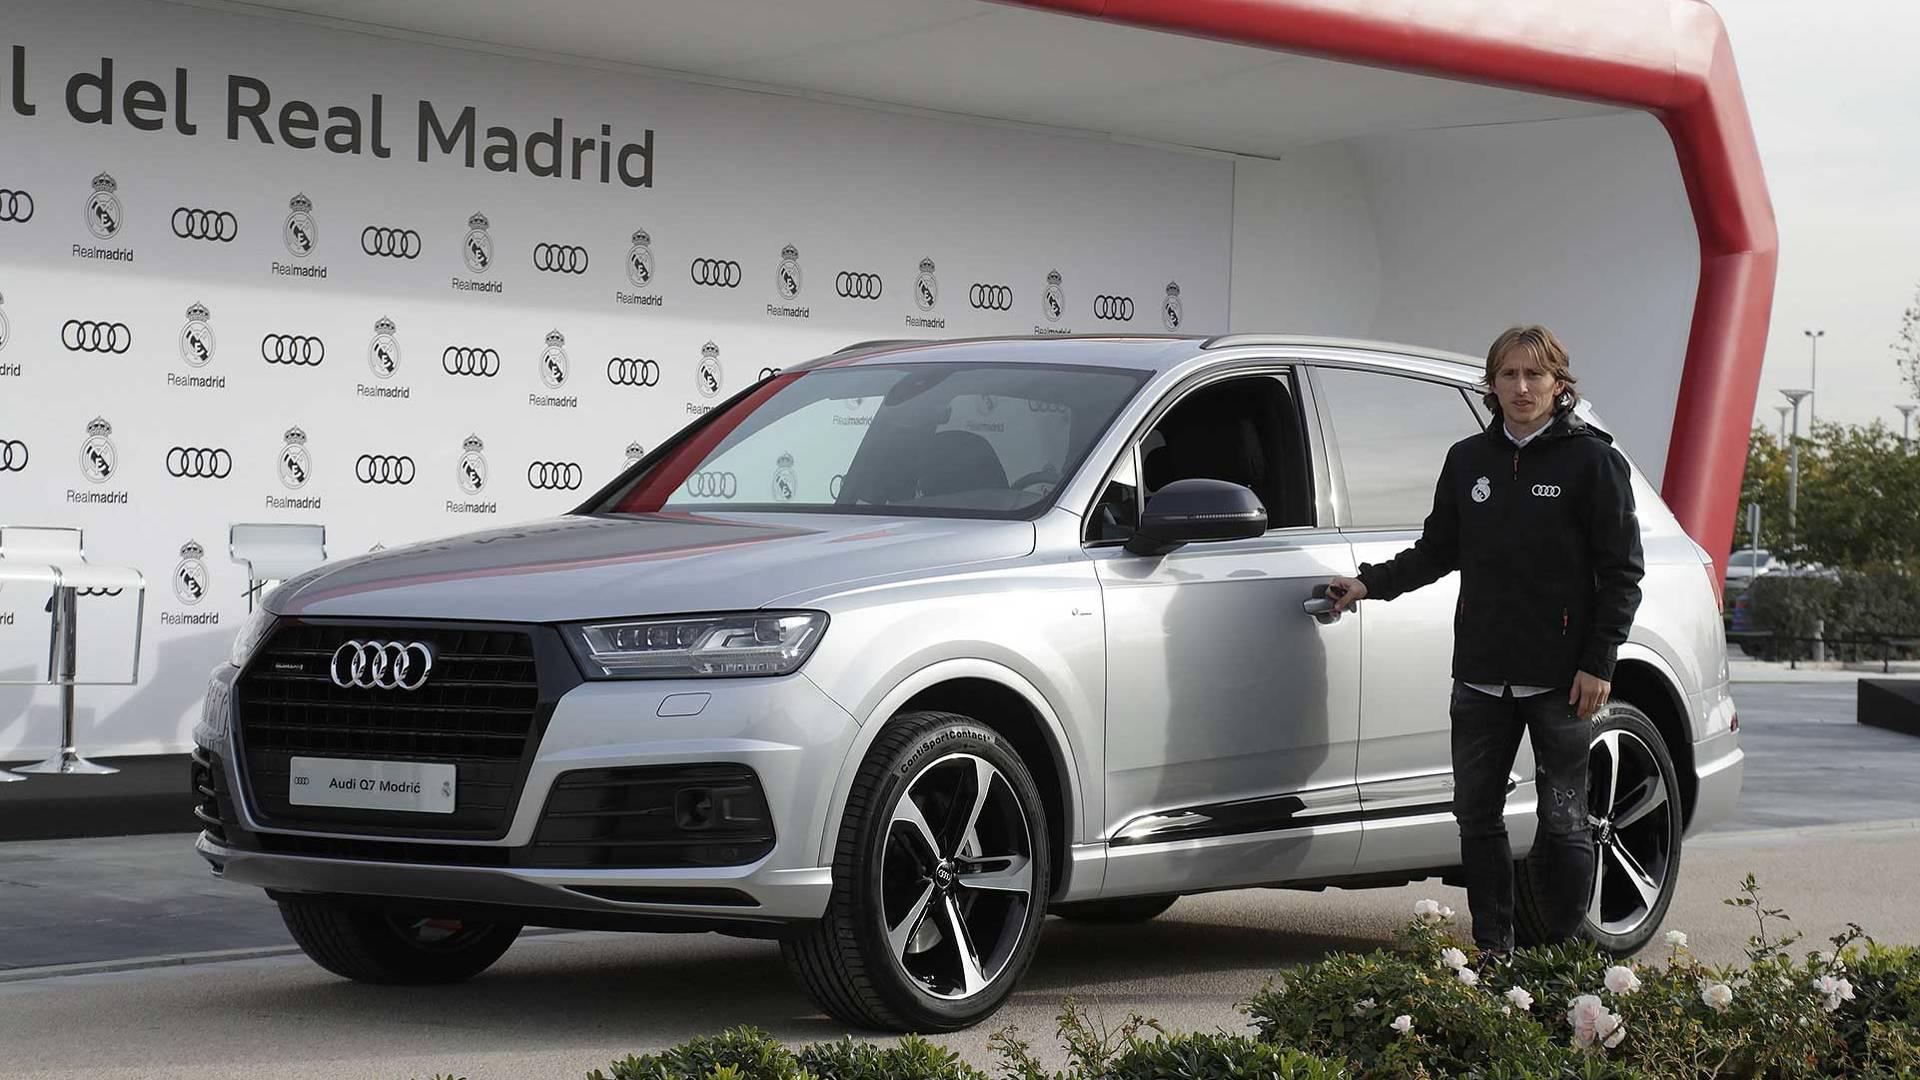 Audi je sponzor Realu i Barceloni, pa Q7 vrijedan oko 600 tisuća kuna voze Modrić, Mateo Kovačić i Rakitić